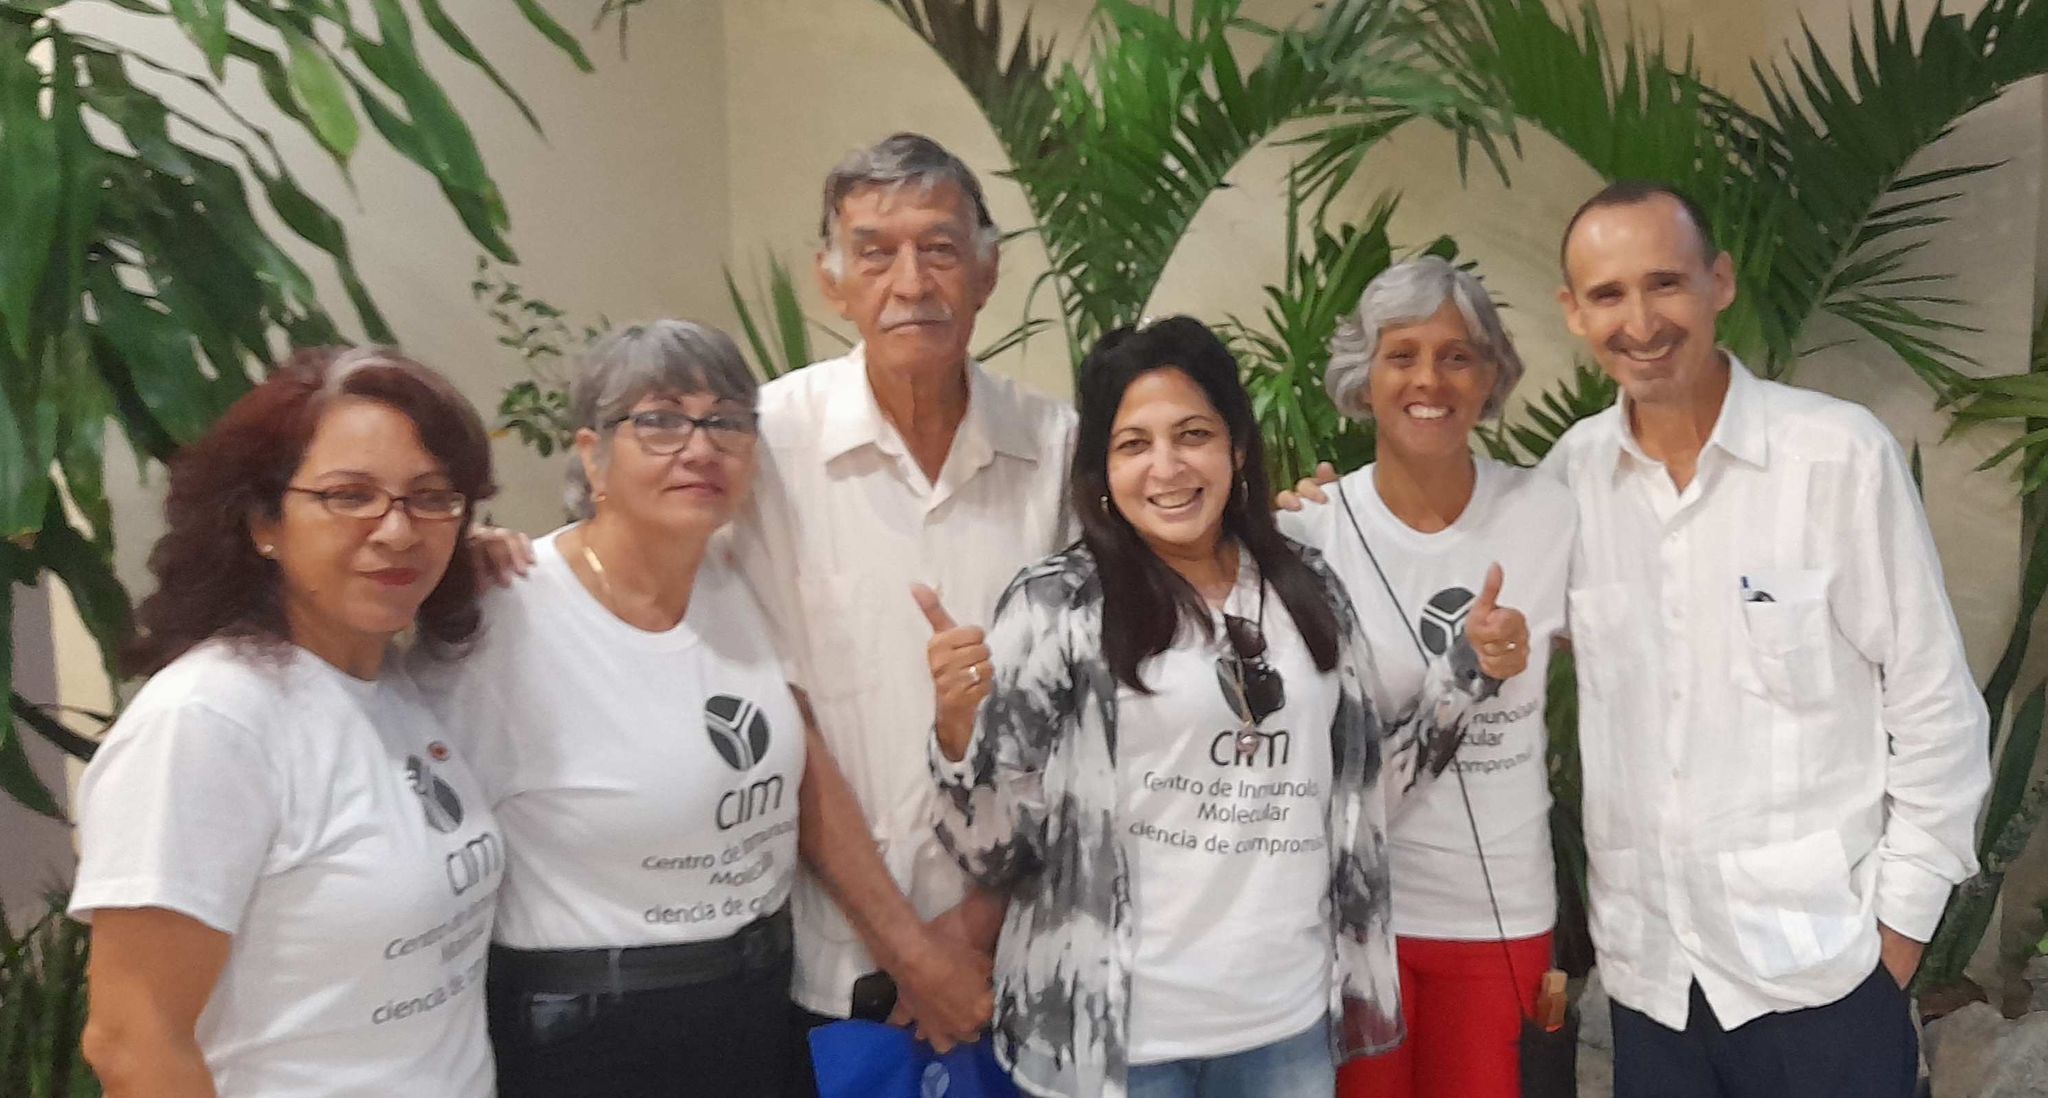 Junto con otros profesionales de la Inmunología en Cuba